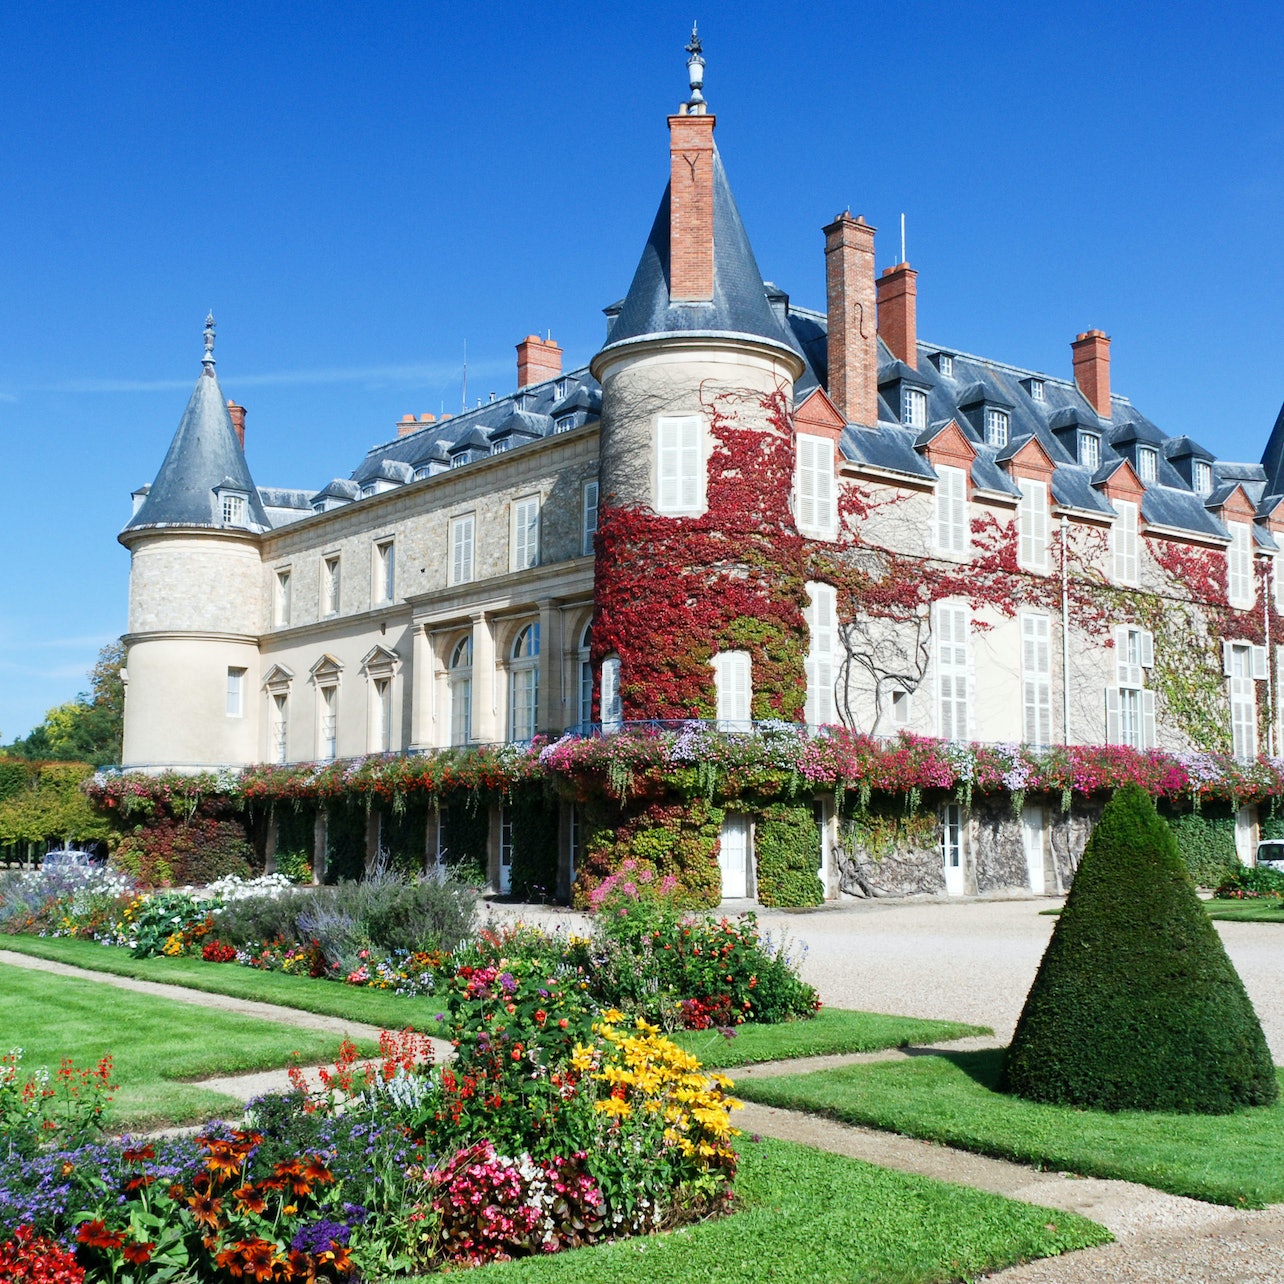 Picture of Château de Rambouillet in Paris, France